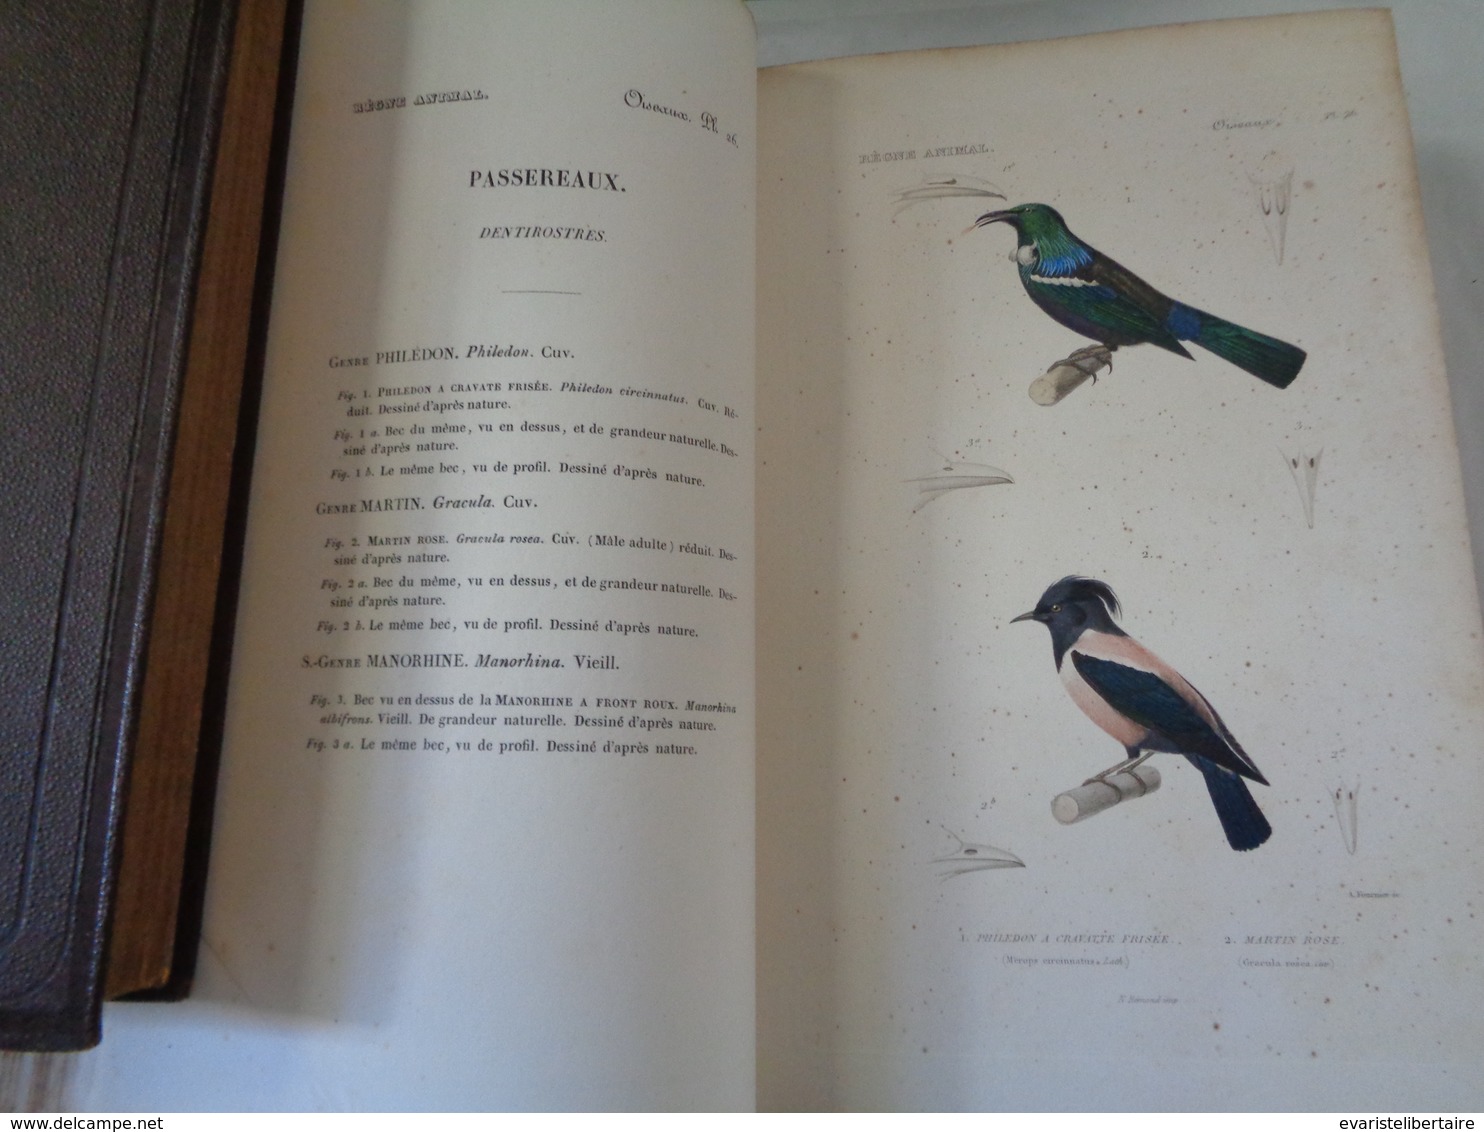 Le régne animal distribué d'après son organisation par Georges CUVIER :atlas des oiseaux par M ALCIDE D'ORBIGNY